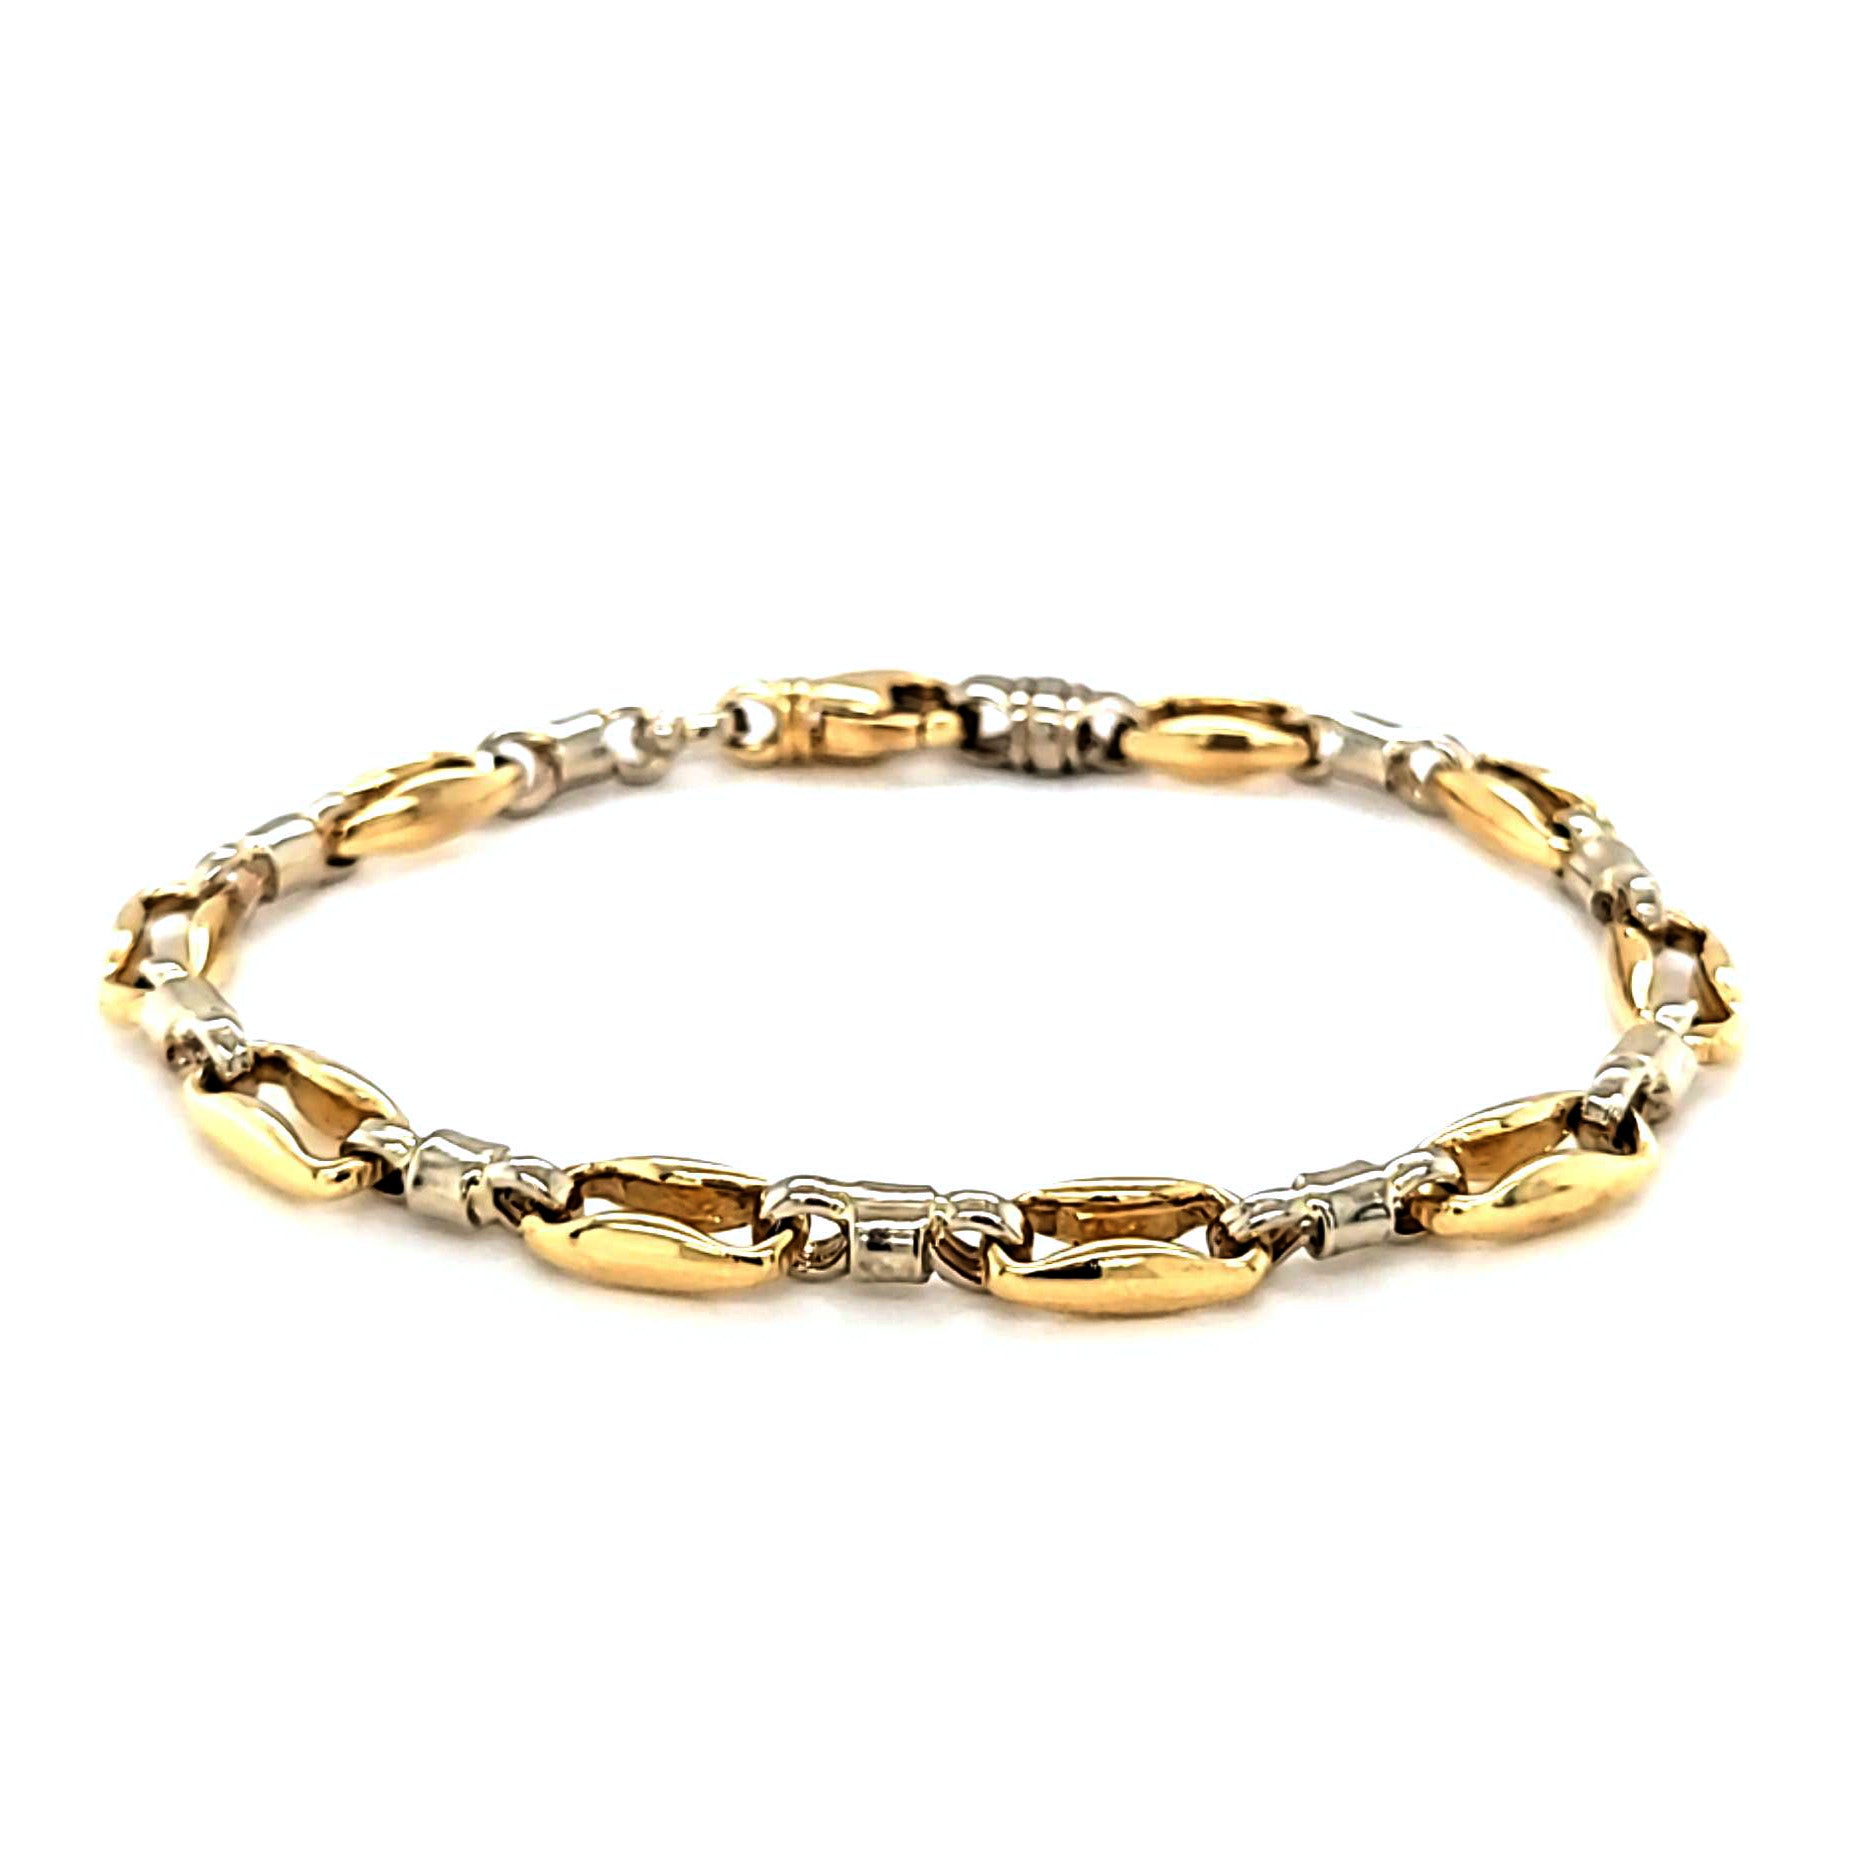 Two-Tone Gold Fashion Bracelet, 7"